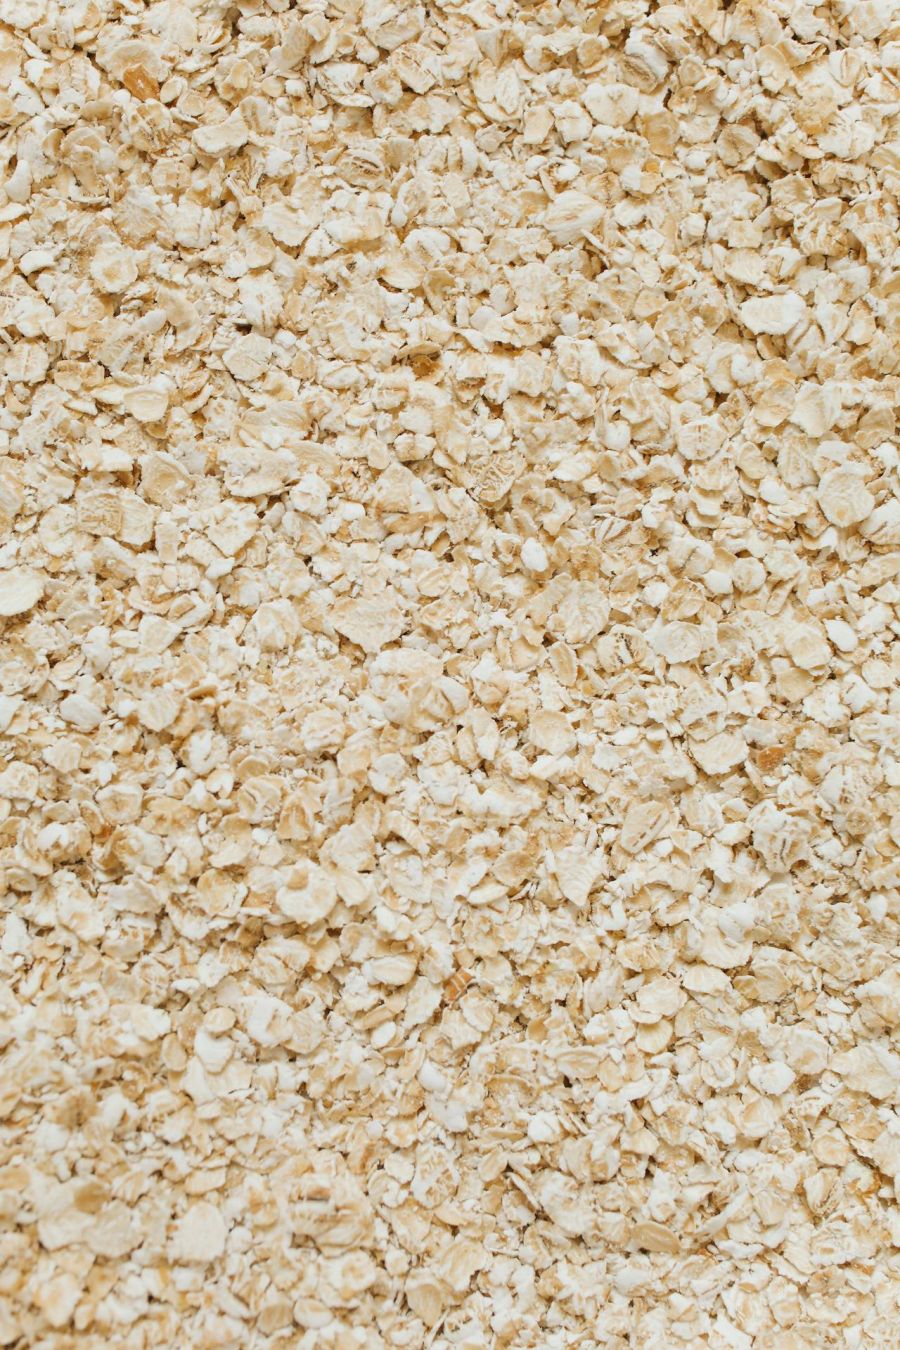 photo of oats